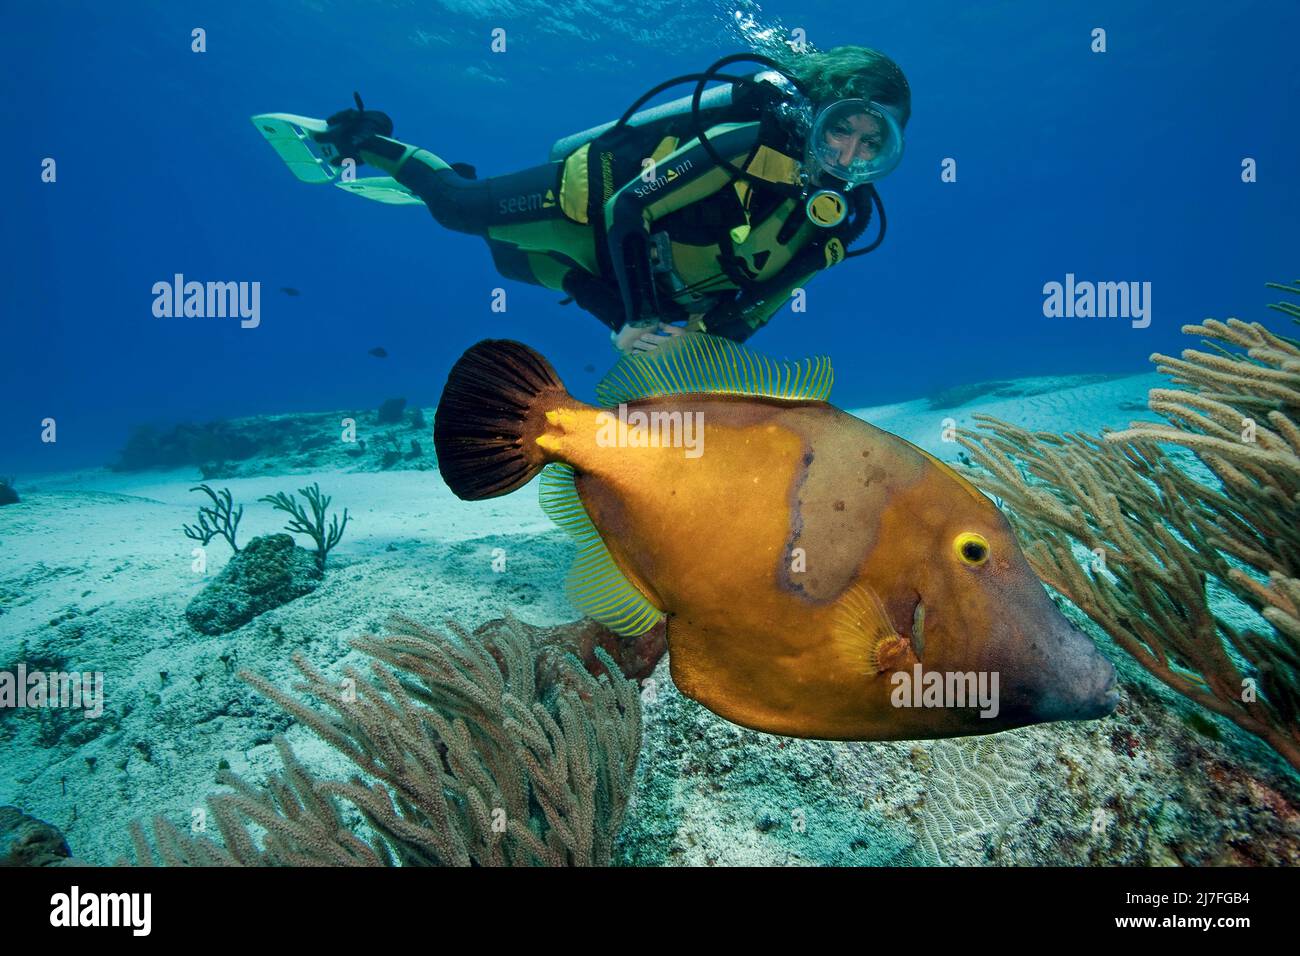 Plongée sous-marine et un corégone blanc américain (Cantherhines macrocerus), dans un récif de corail des caraïbes, Cozumel, Mexique, Caraïbes, mer des Caraïbes Banque D'Images